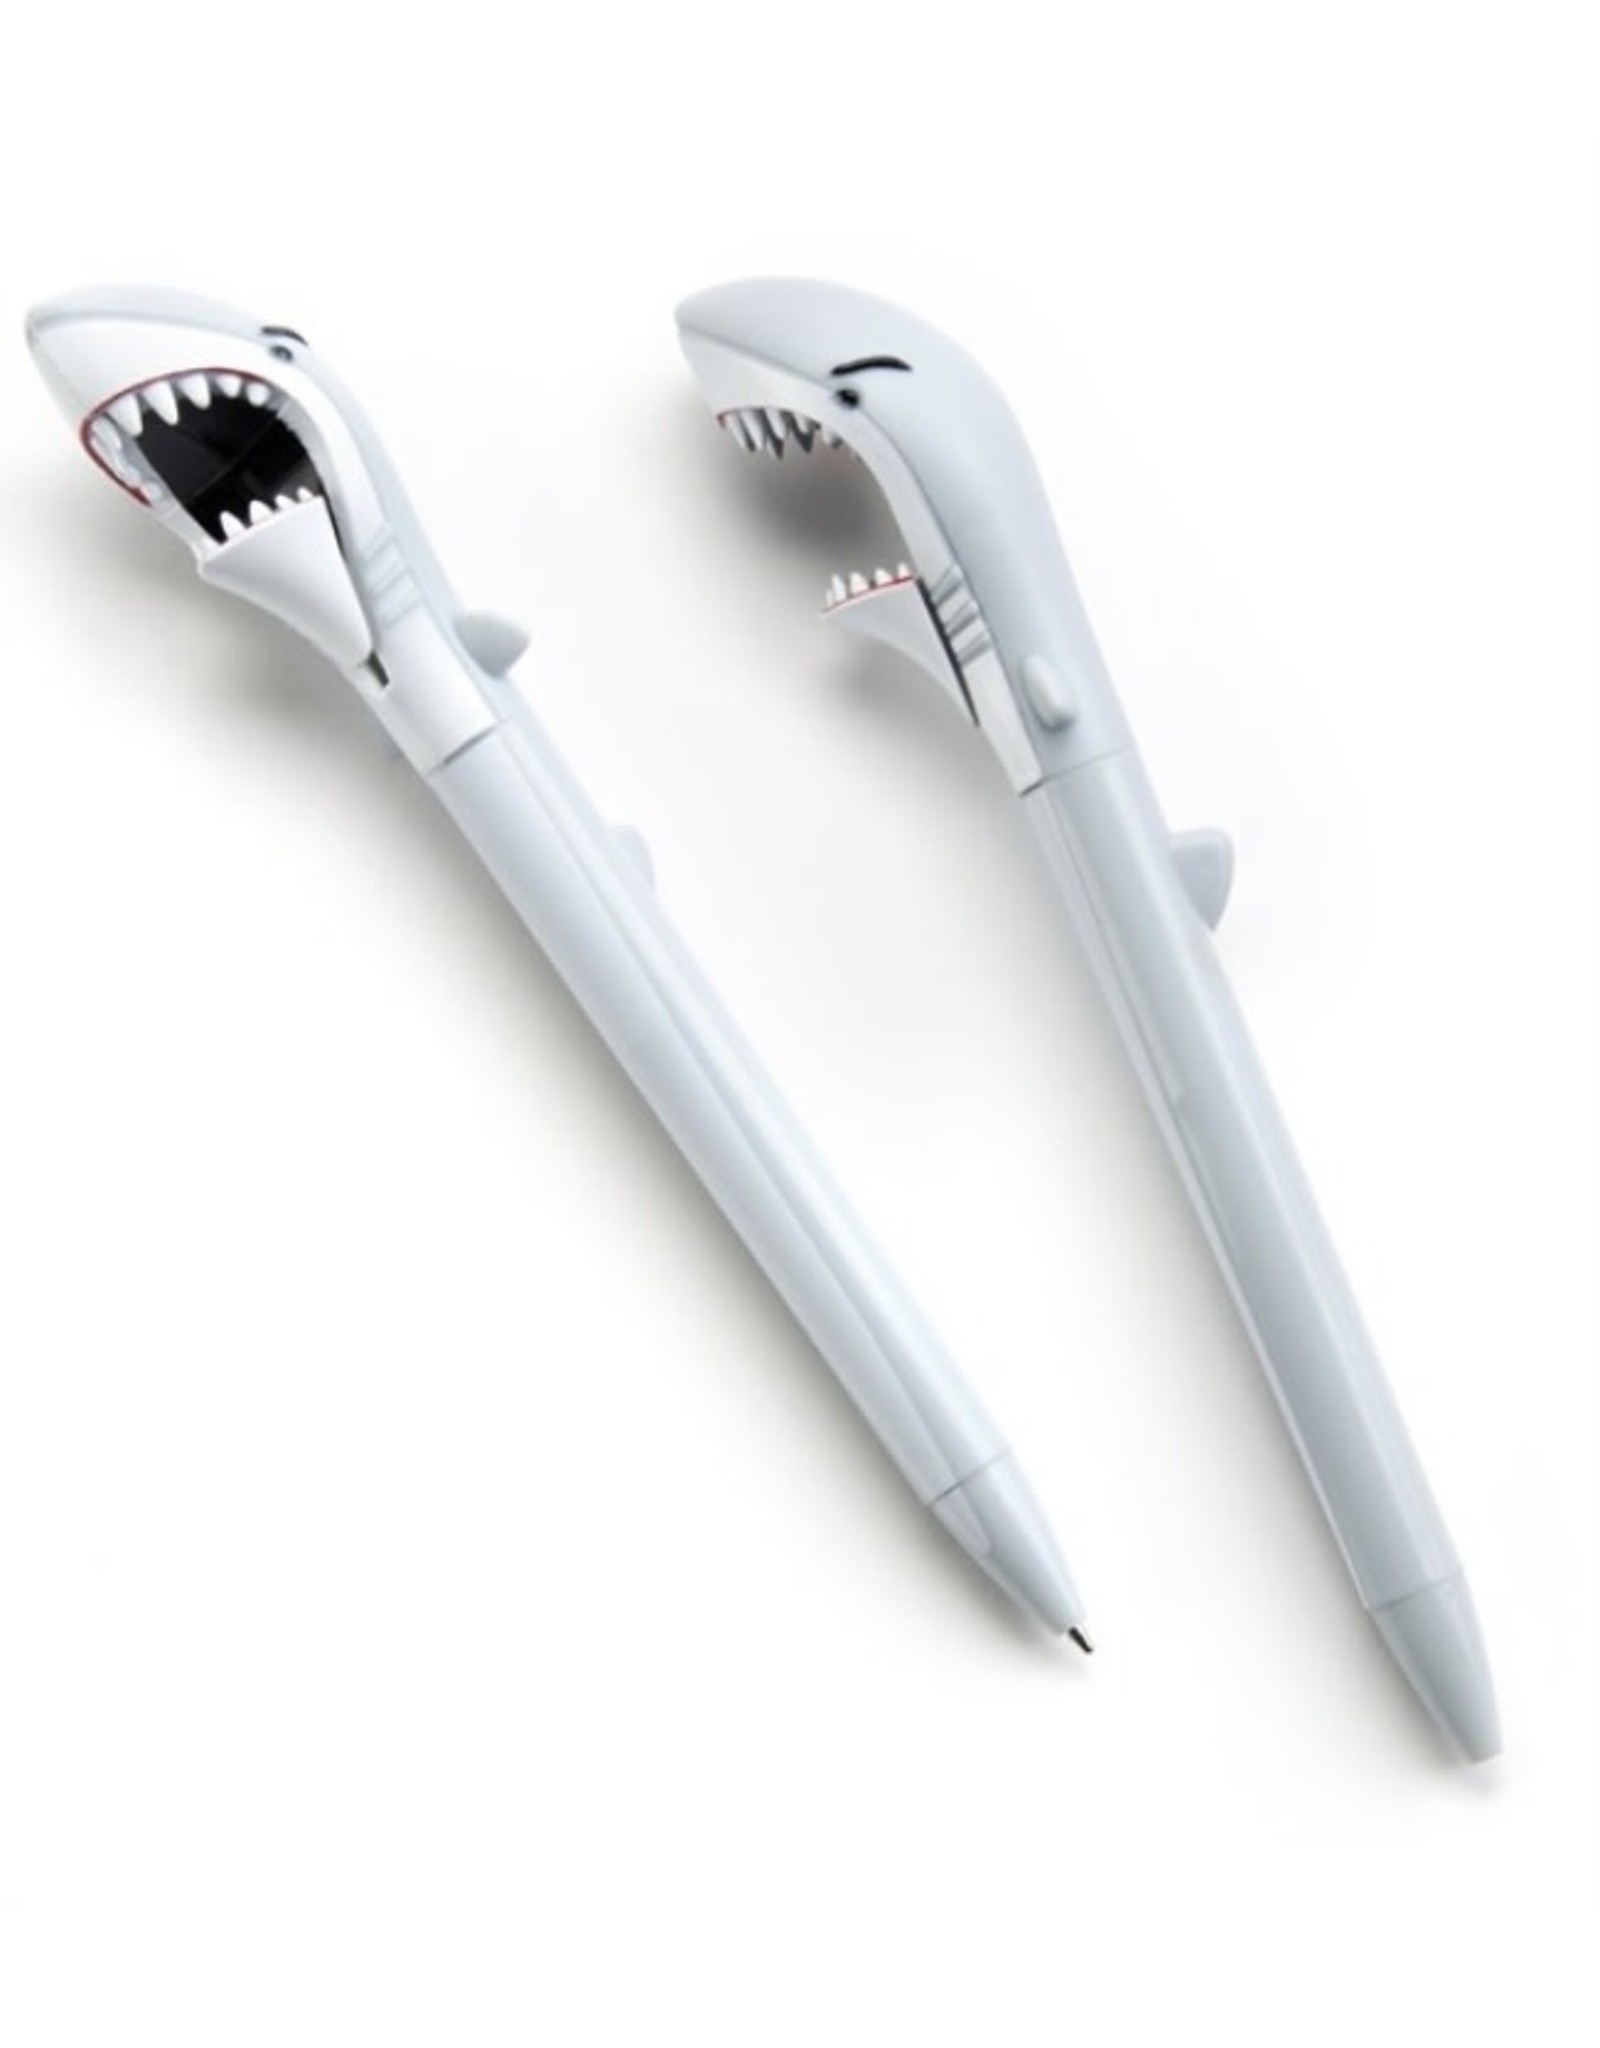 GC- Shark Pen